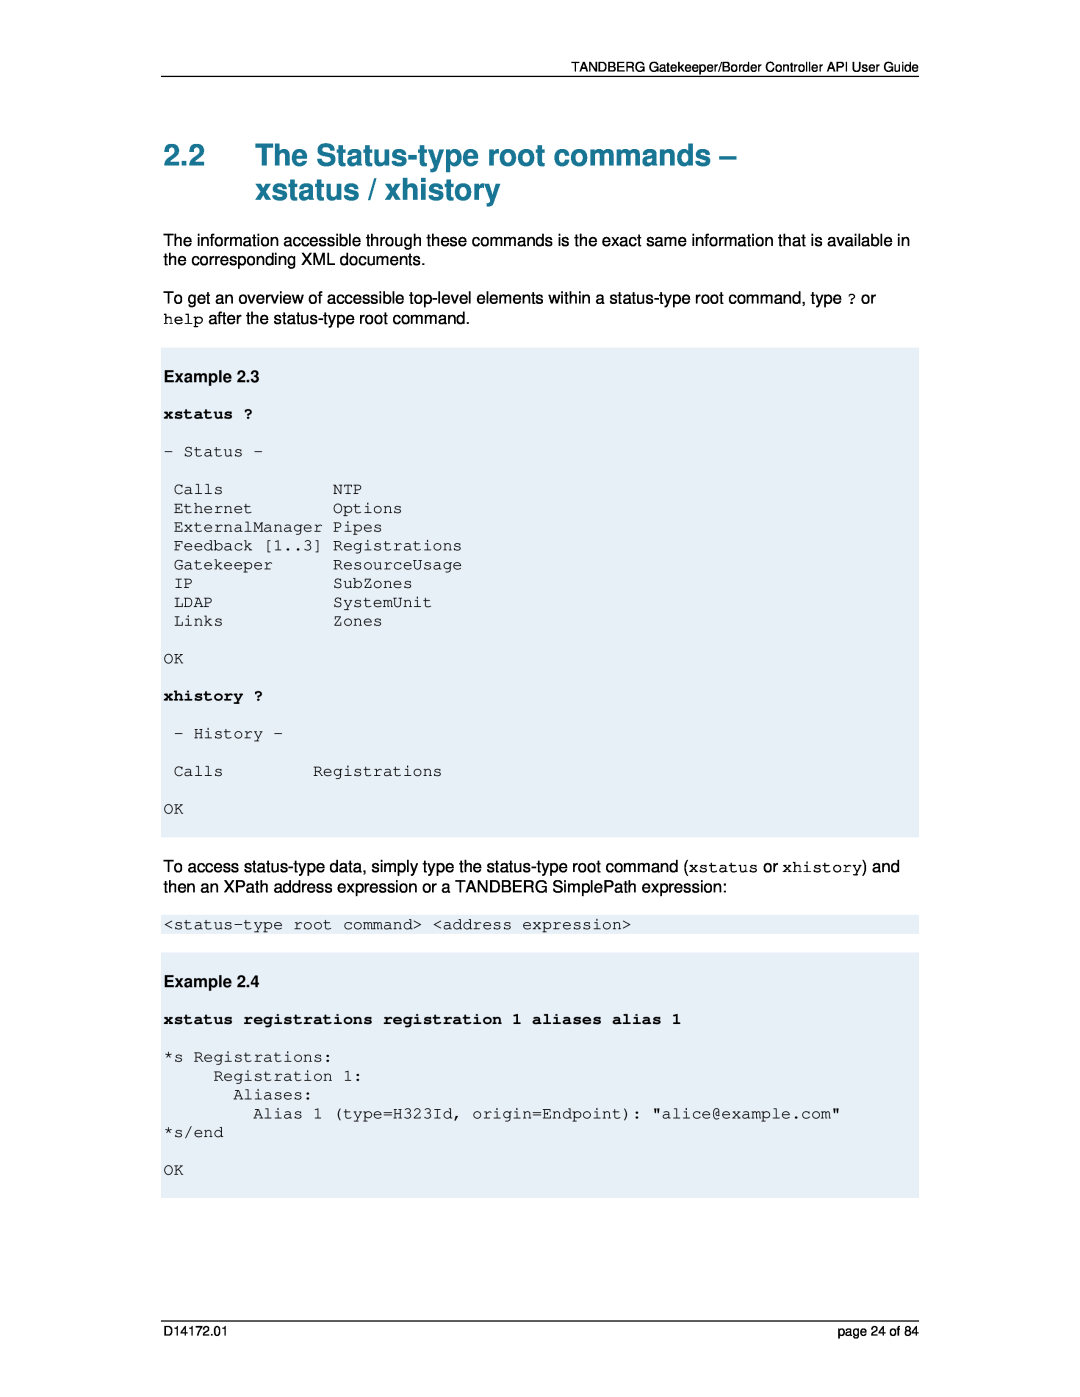 TANDBERG D14172.01 manual The Status-type root commands - xstatus / xhistory, xstatus ?, OK xhistory ? - History, Example 